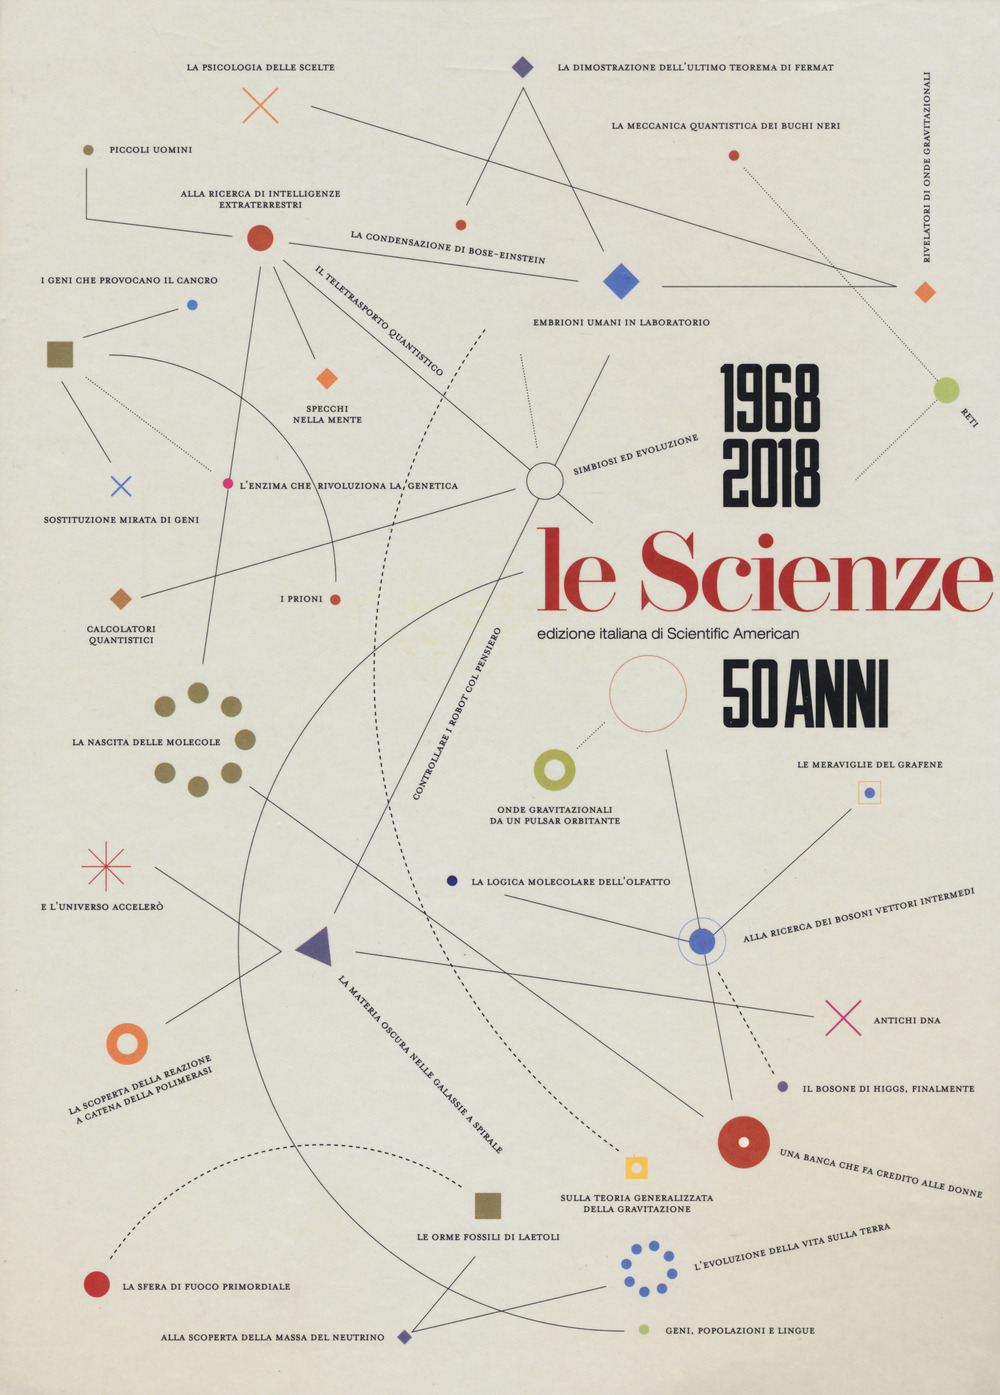 Image of Le Scienze. 50 anni (1968-2018)